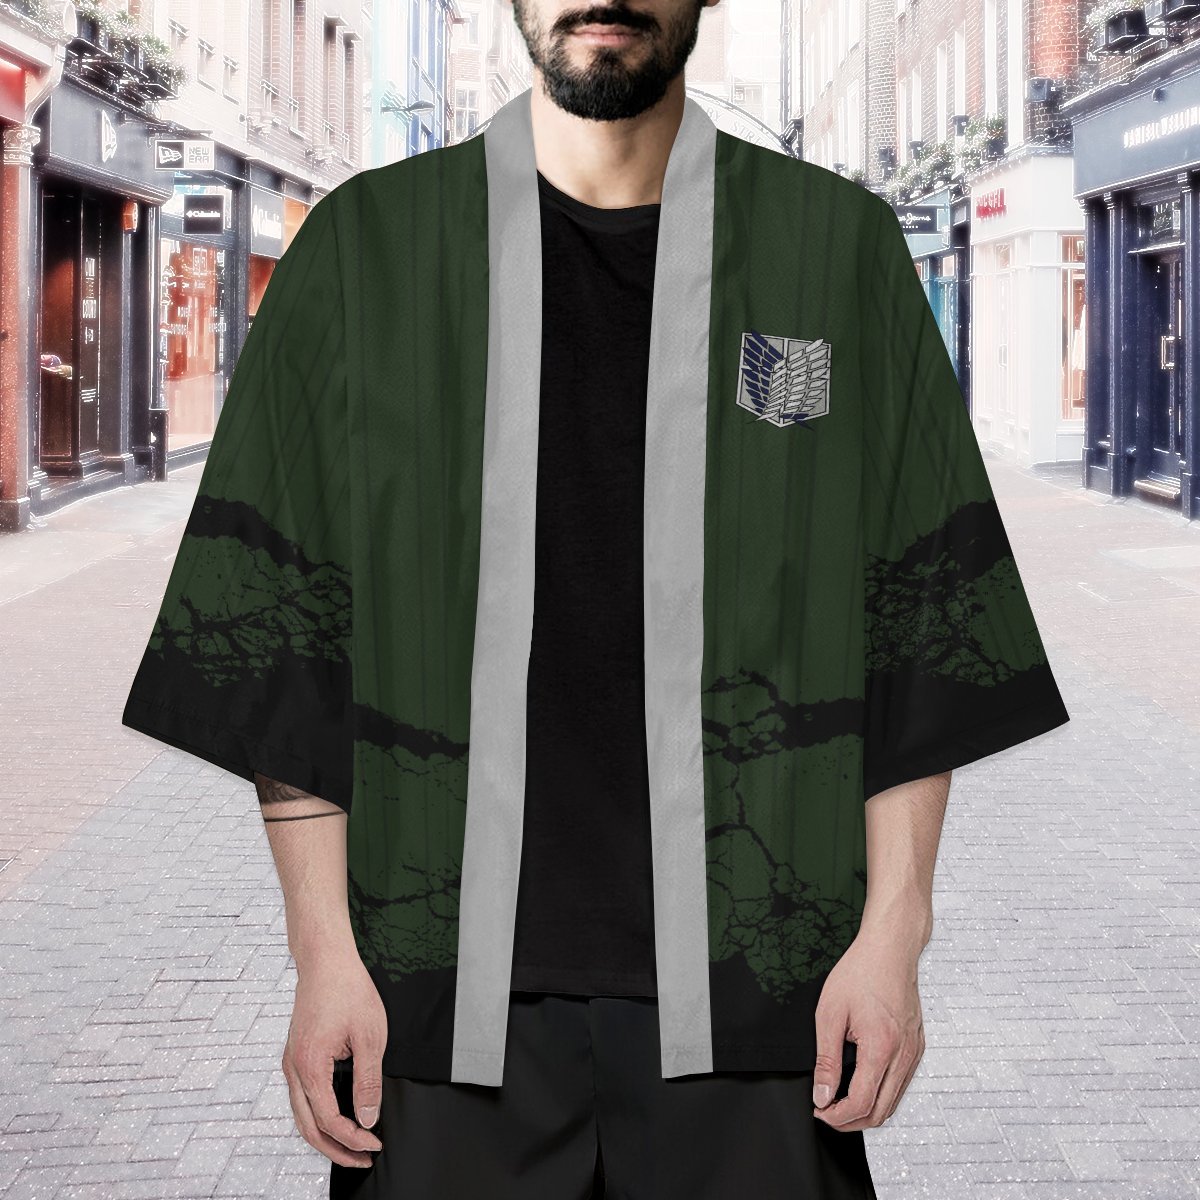 AOT Recon Corps Kimono